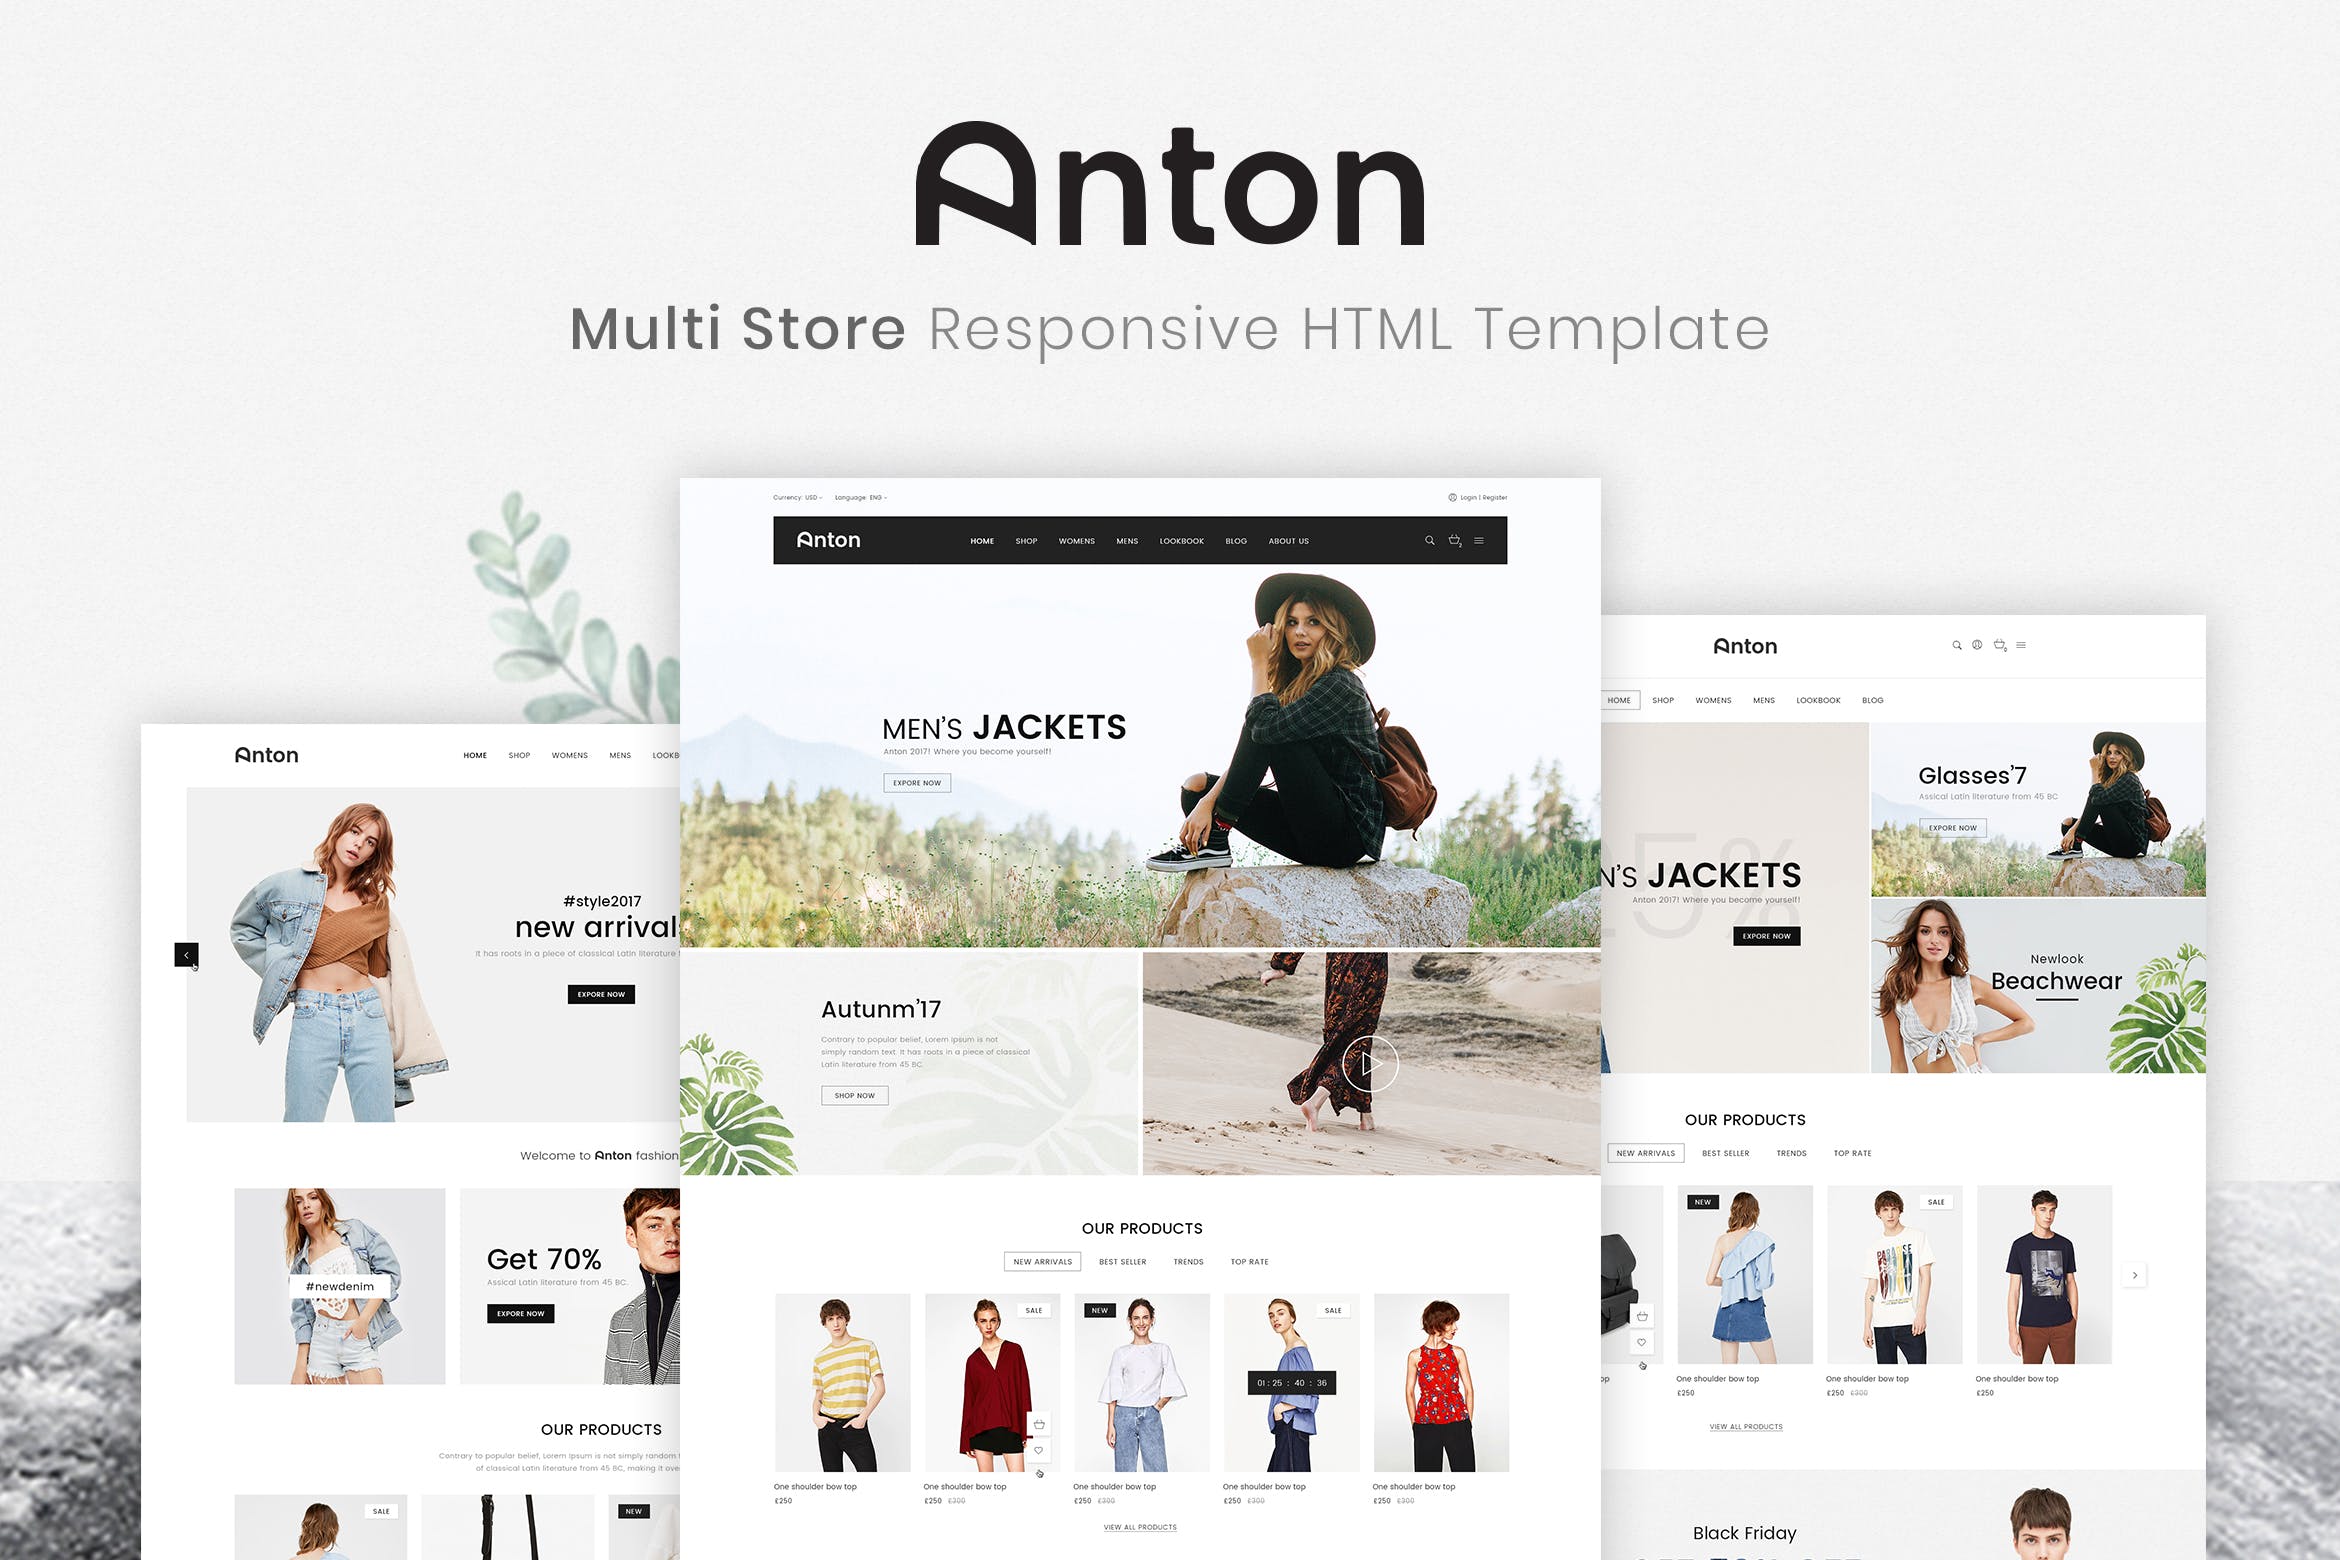 响应式时尚服饰网上商城HTML模板蚂蚁素材精选素材 Anton | Multi Store Responsive HTML Template插图